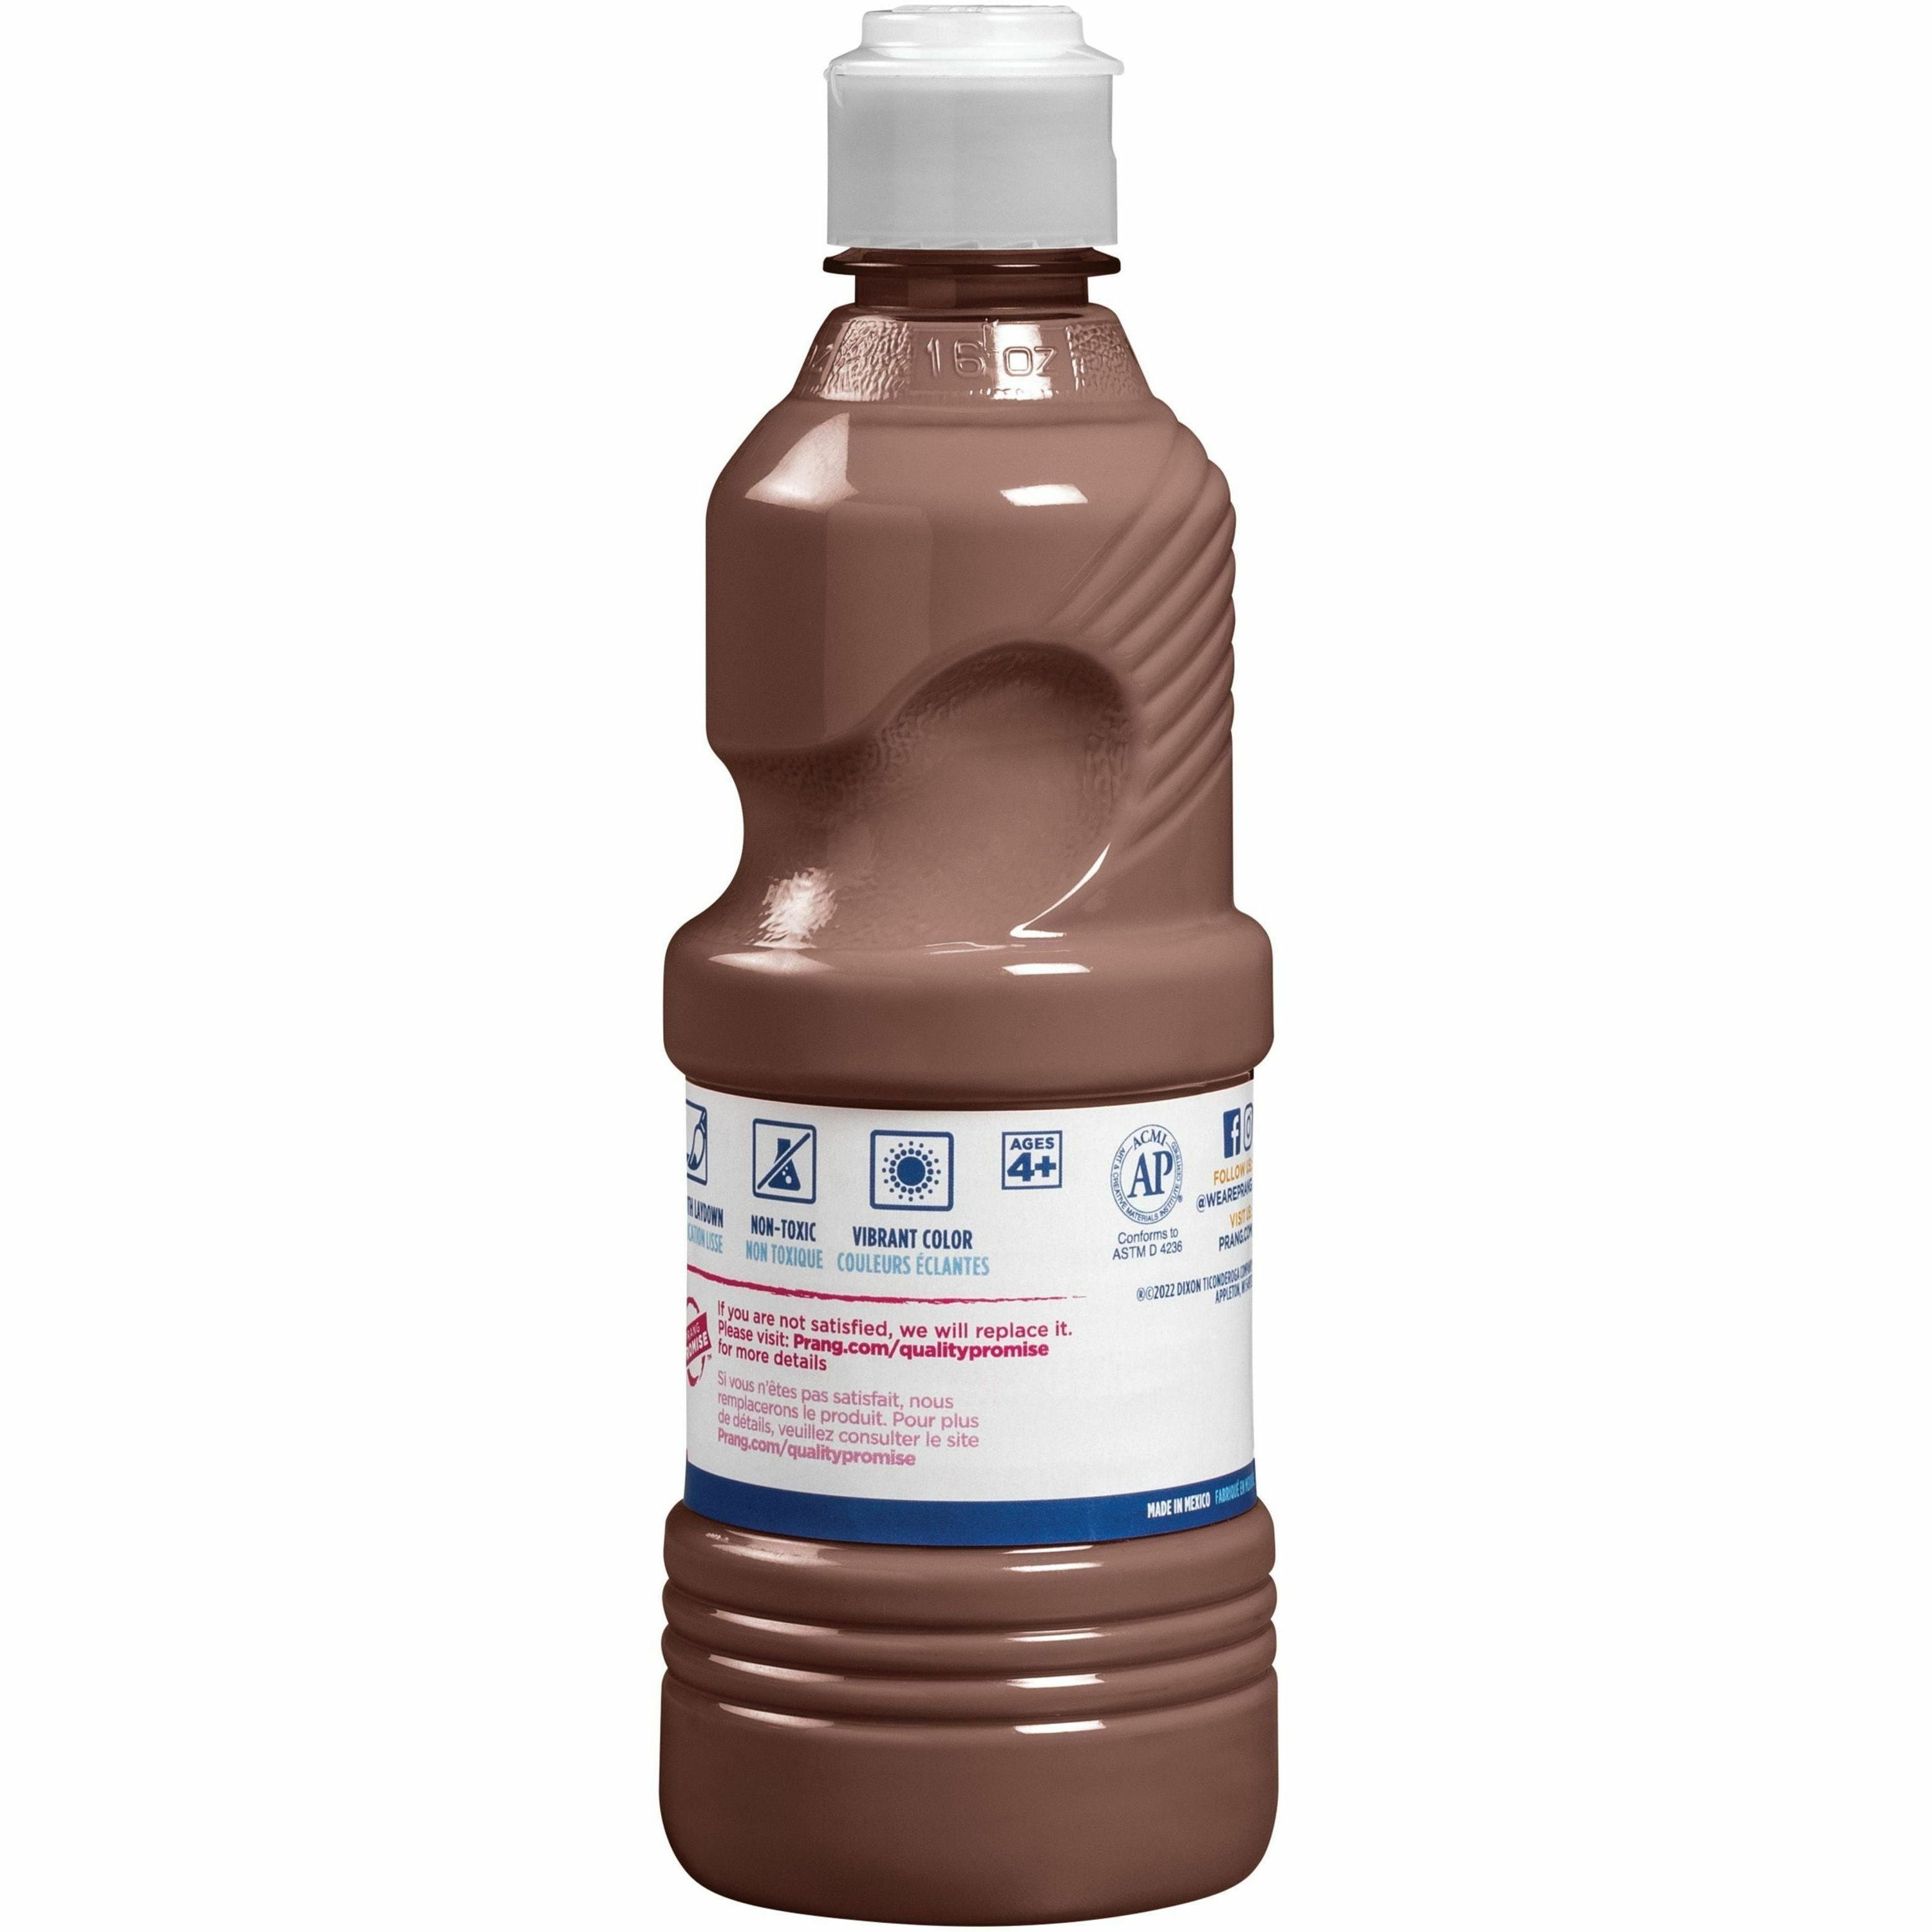 Prang Liquid Tempera Paint - 16 fl oz - 1 Each - Brown - 